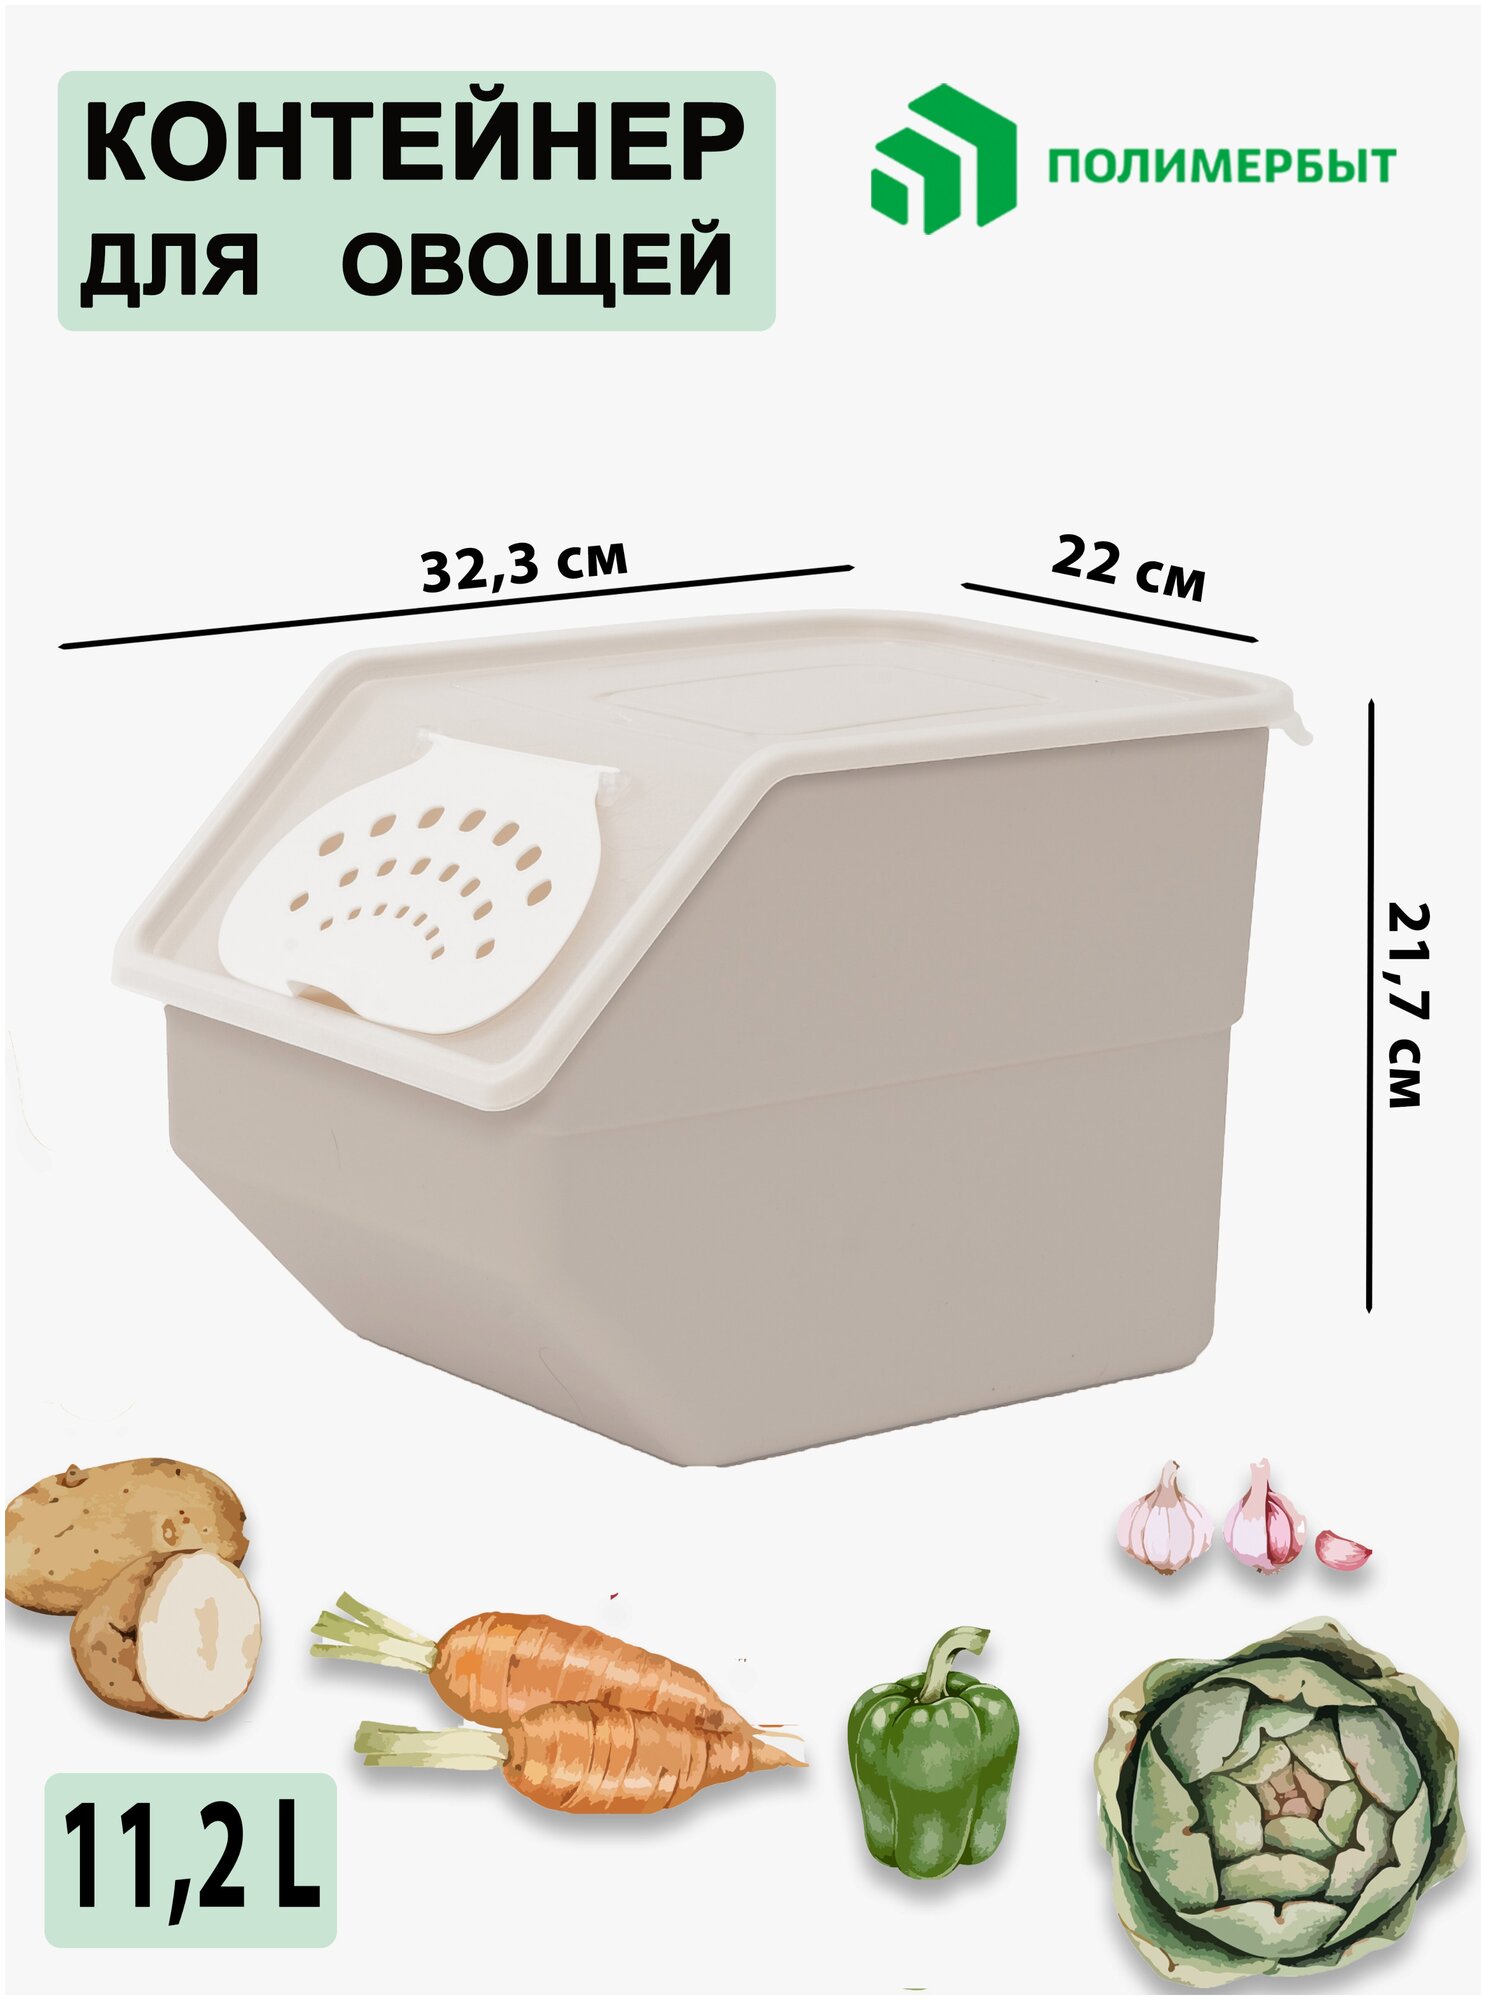 Контейнер пищевой 11,2 л для хранения овощей фруктов емкость для кухни дачи органайзер для холодильника 32,3х22х21,7 см пластиковый ящик Полимербыт